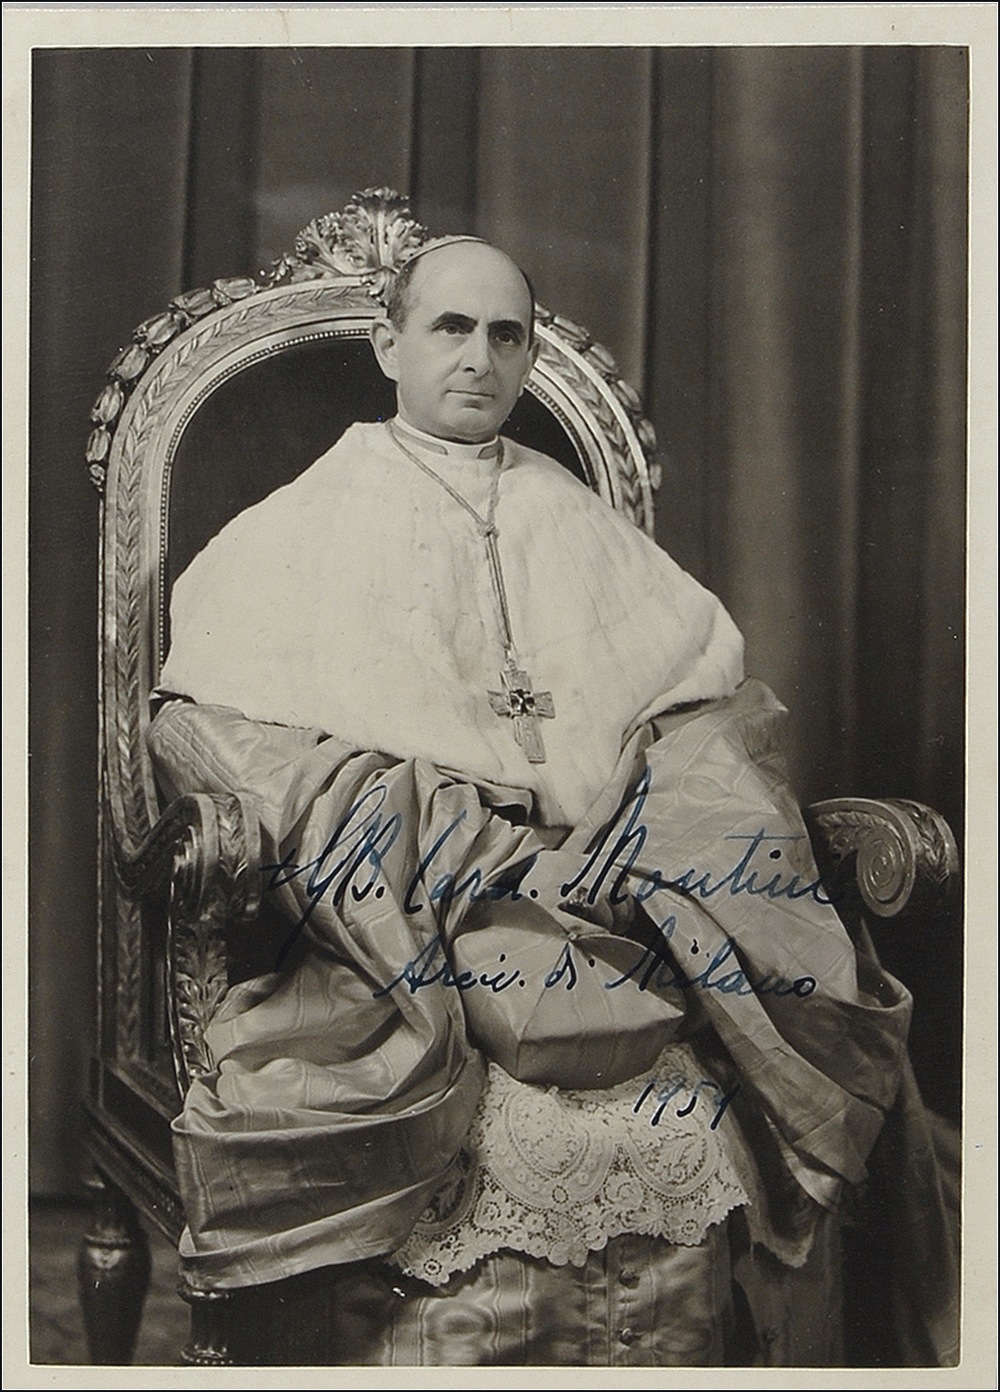 Lot #262 Paul VI